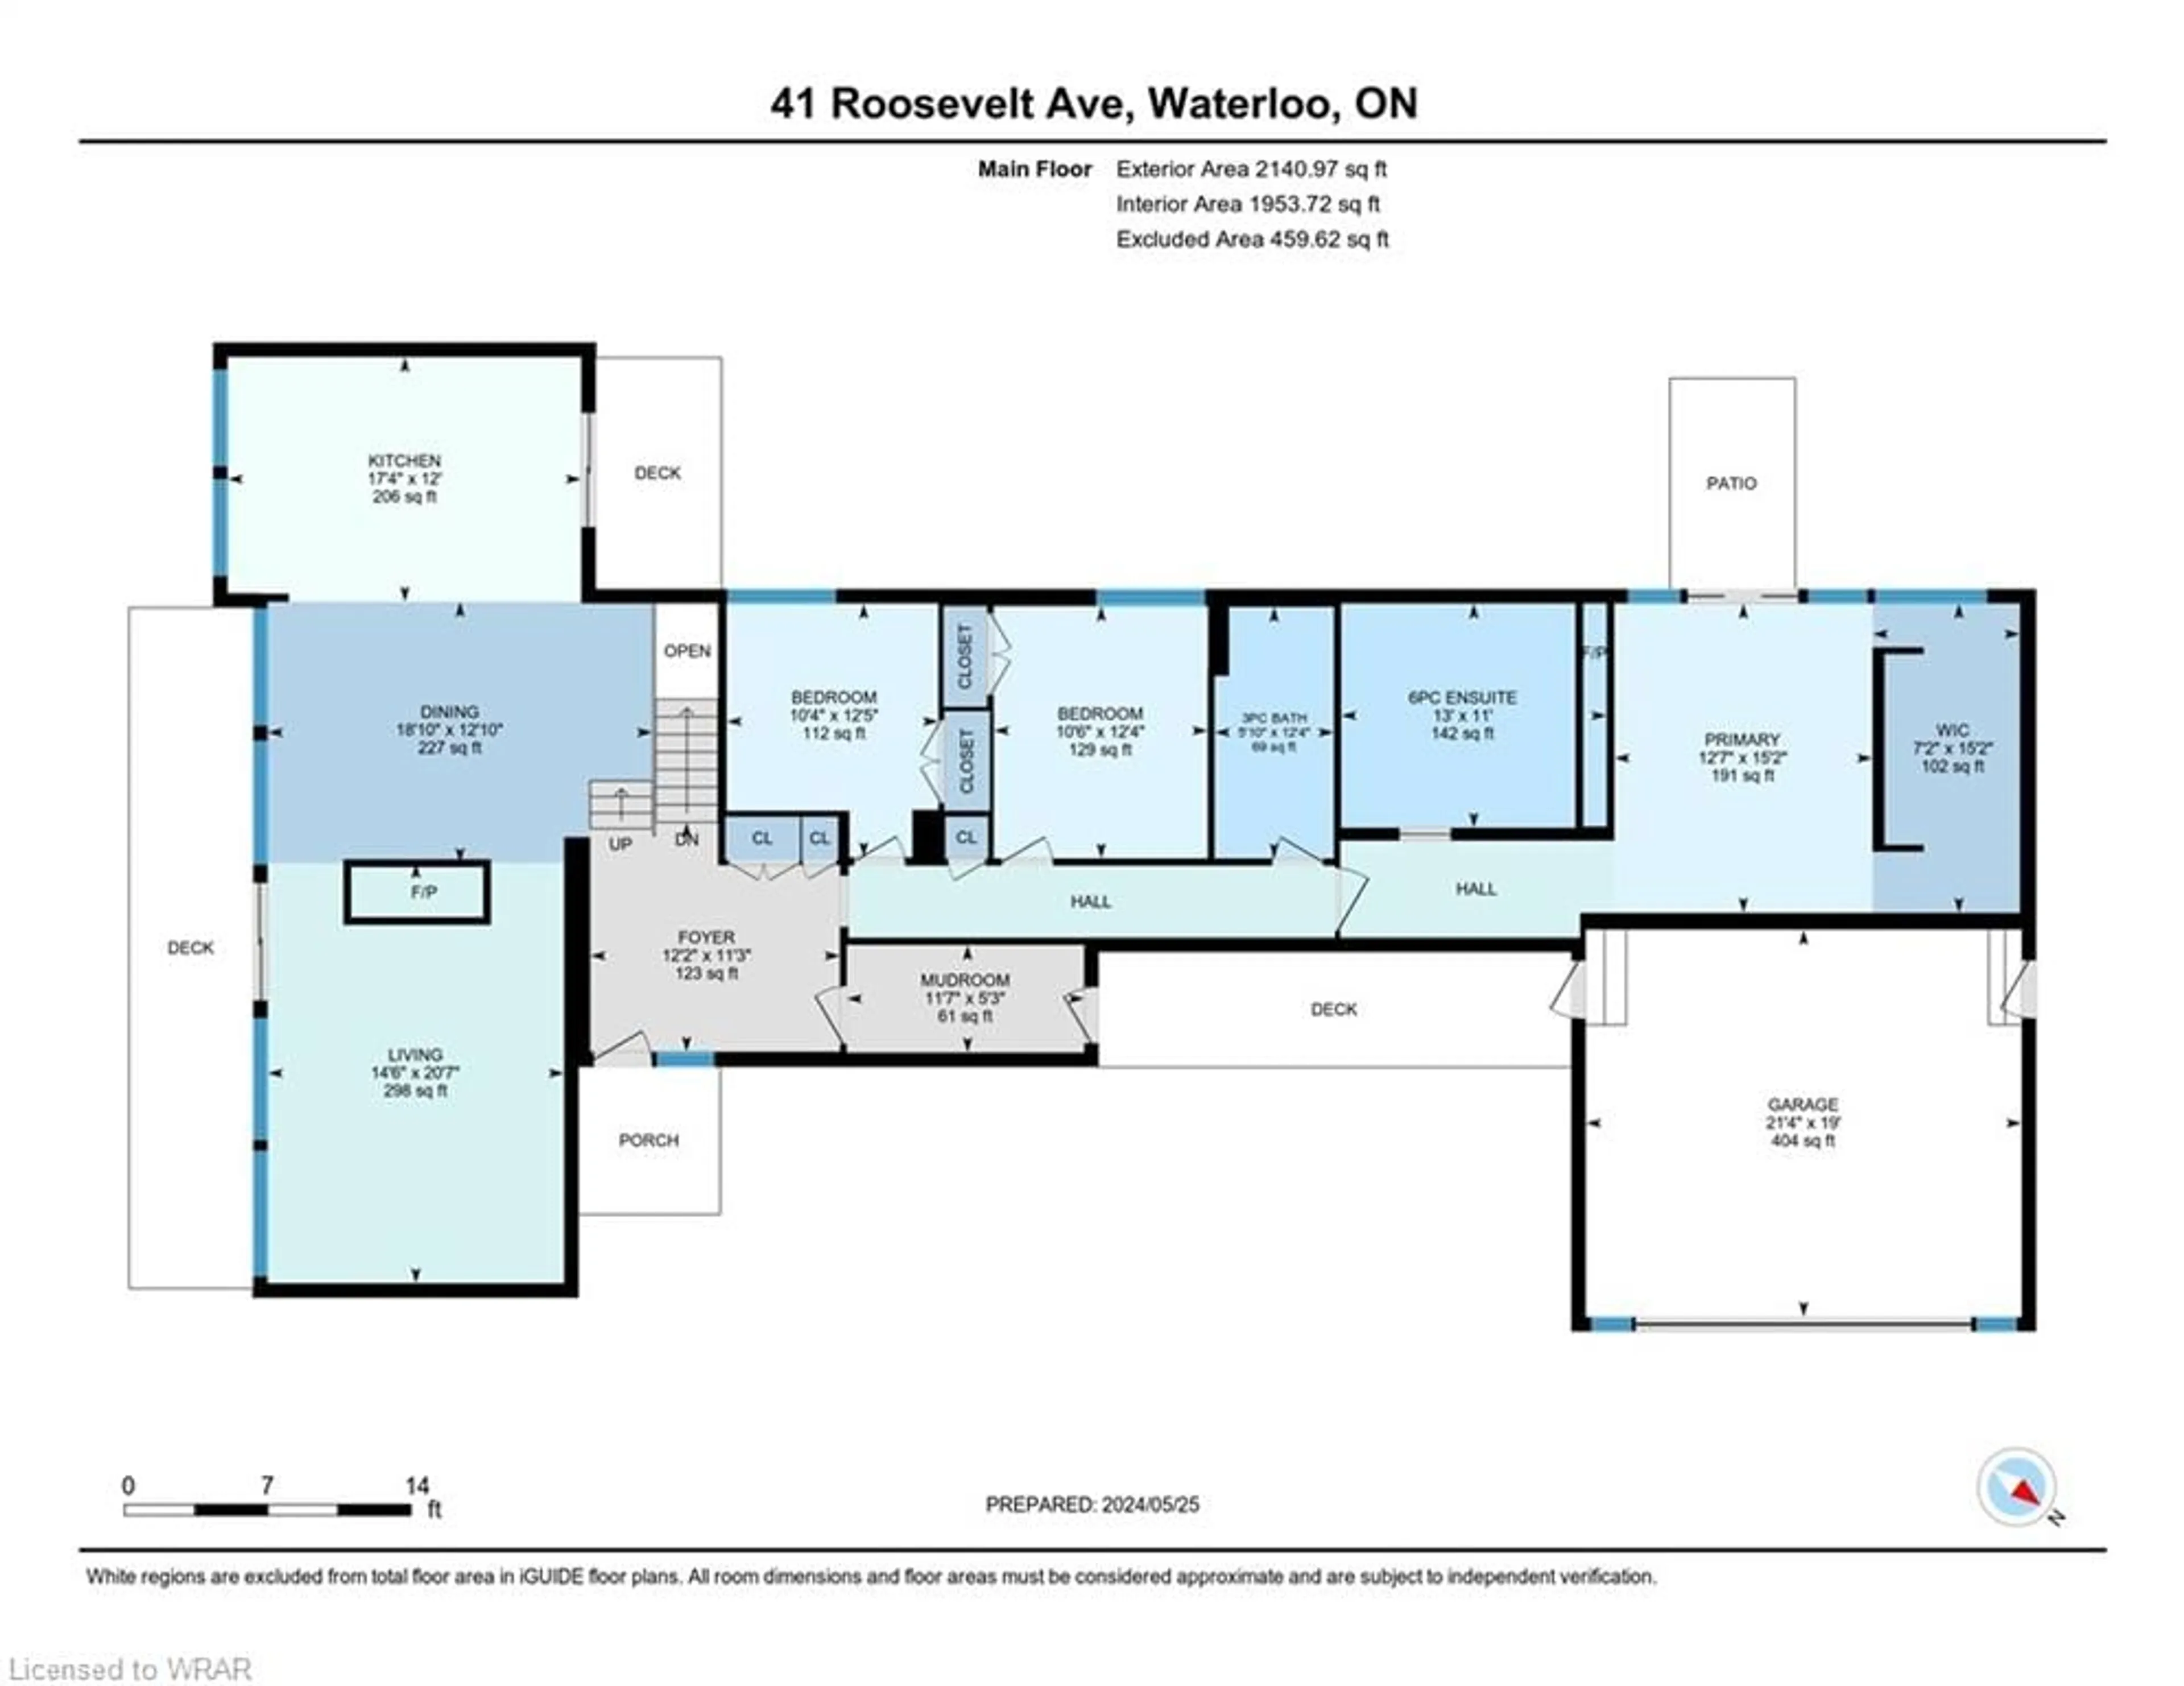 Floor plan for 41 Roosevelt Ave, Waterloo Ontario N2L 2N2